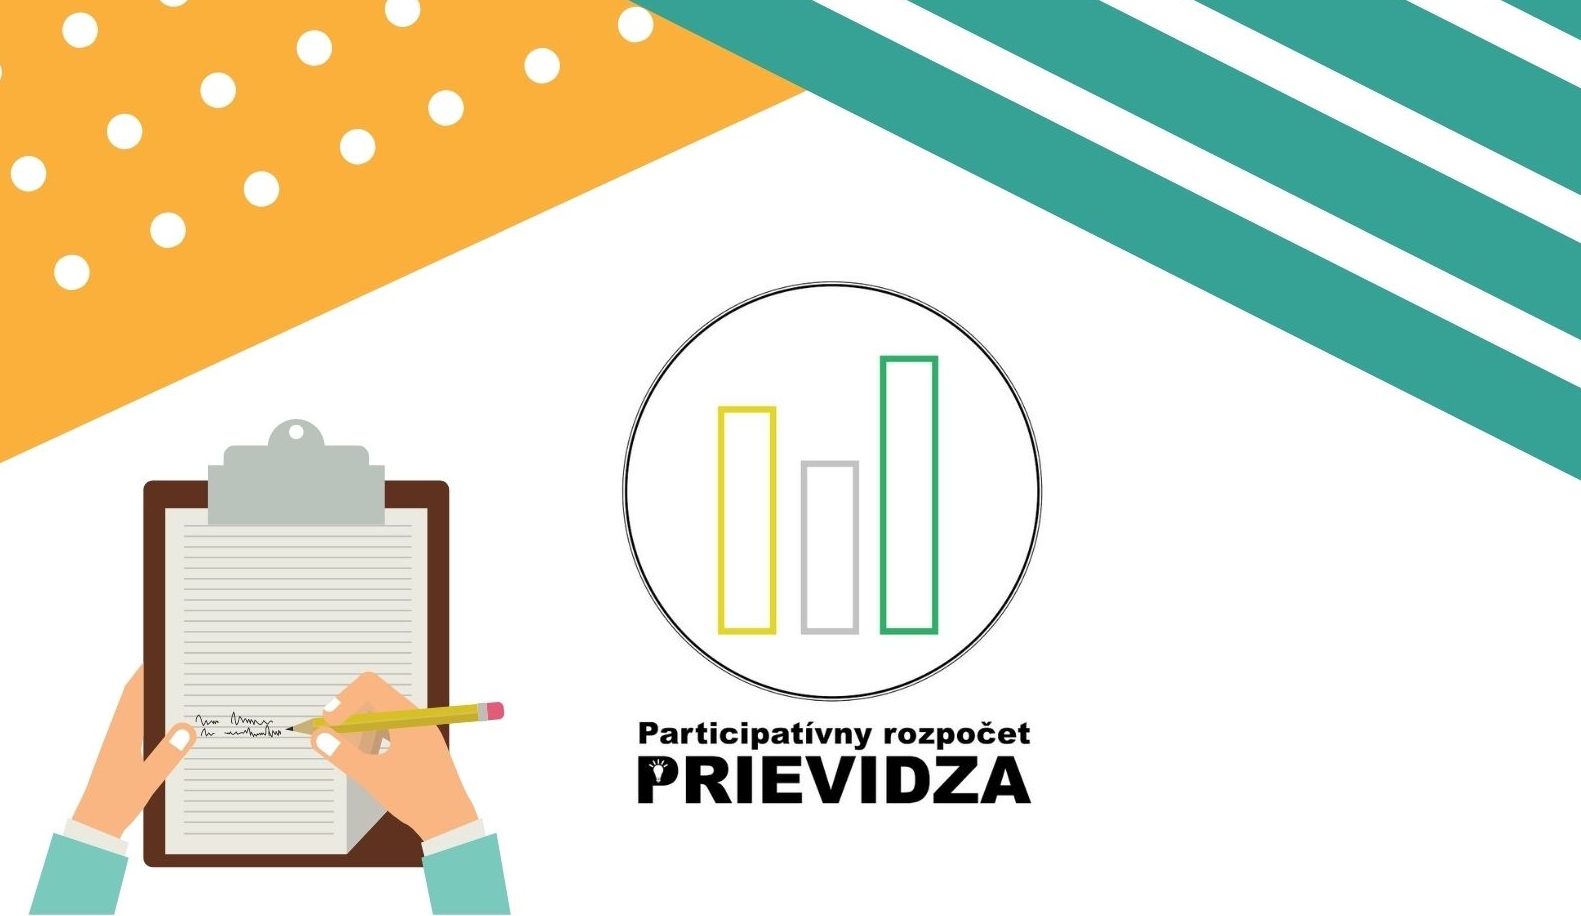 Projekty participatívneho rozpočtu v meste Prievidza 2021/2022